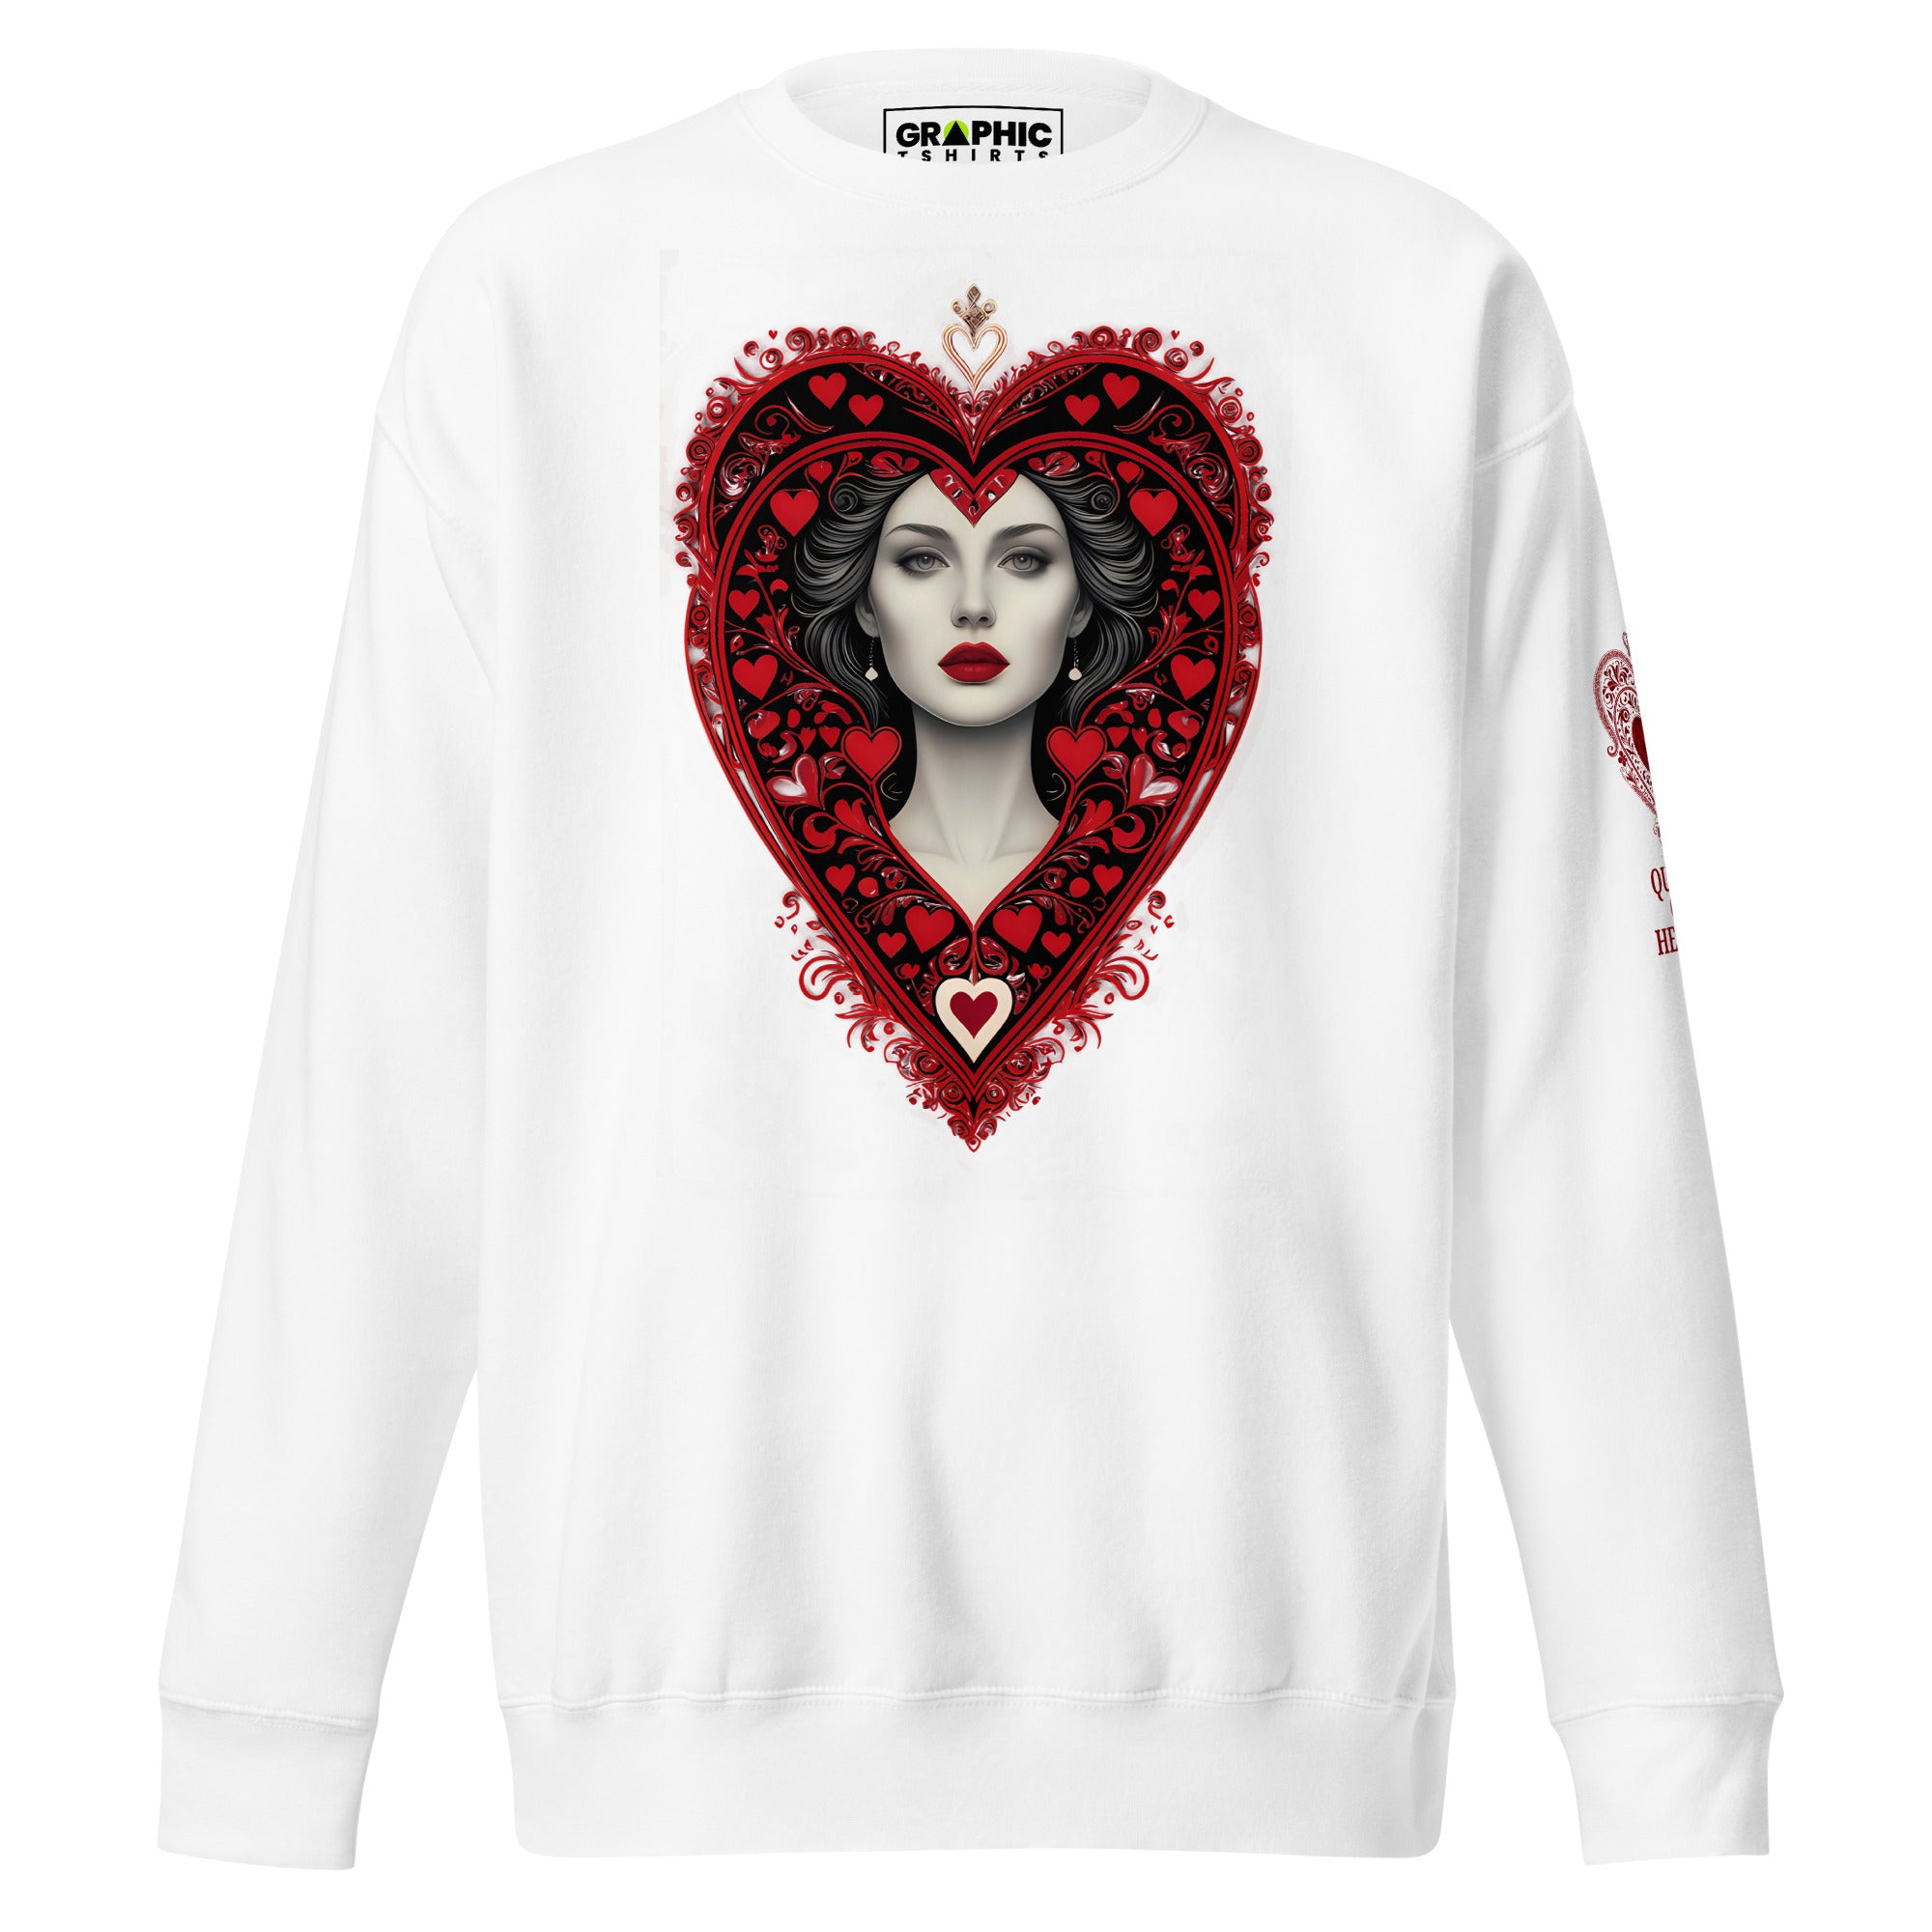 Unisex Premium Sweatshirt - Queen Of Hearts Series v.6